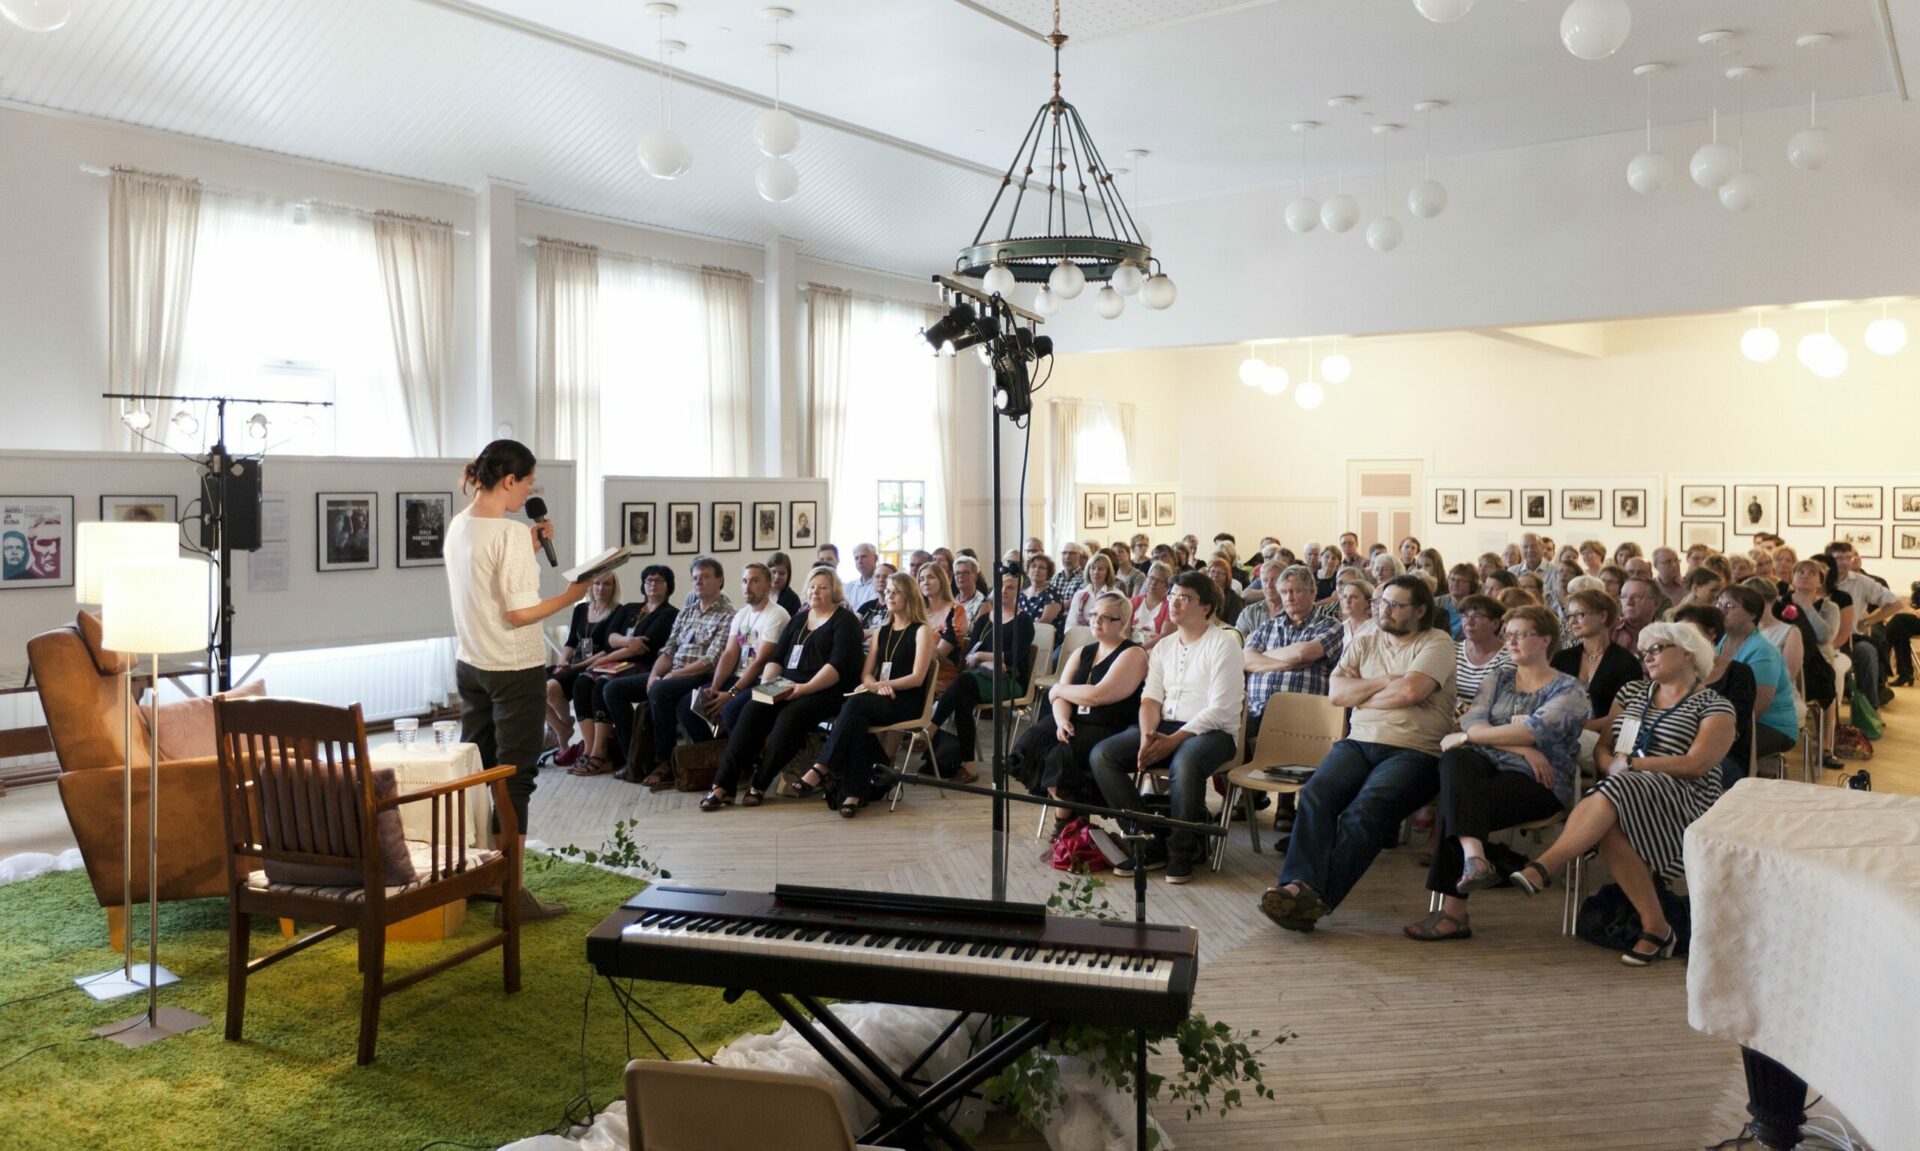 Kirjailija esiintymässä Pentinkulman päivillä. Kuva on otettu kirjailijan takaa lavalta, yleisö istuu tuoleilla kasvot kameraan.